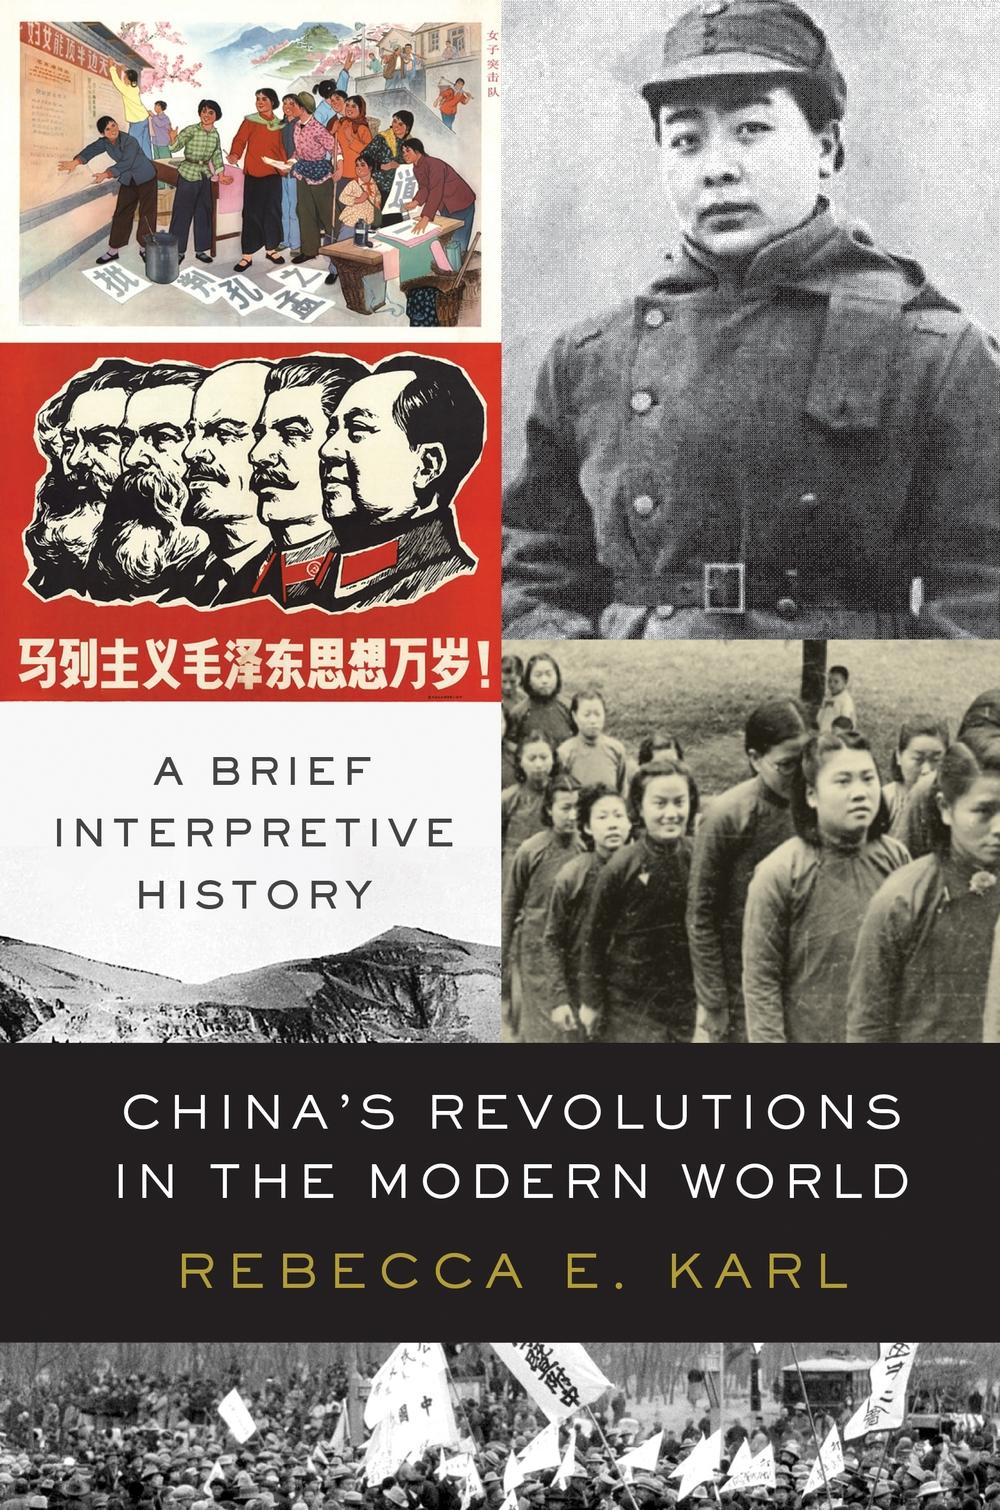 China's Revolutions in the Modern World - Rebecca E Karl